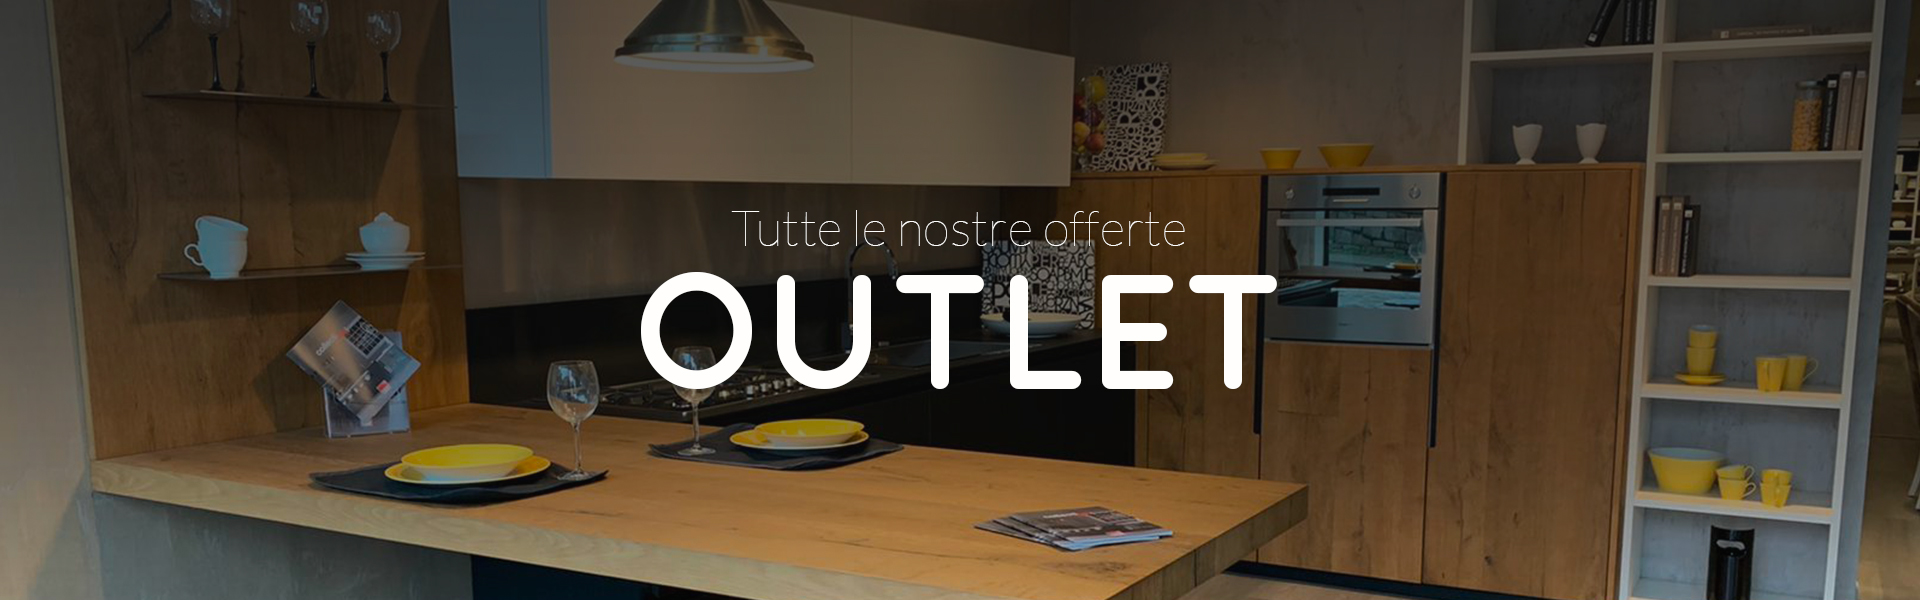 outlet1-cucine-lube-lariano-roma-provincia-castelli-romani-offerte-cucine-lube-saldi-sconti-arredamento